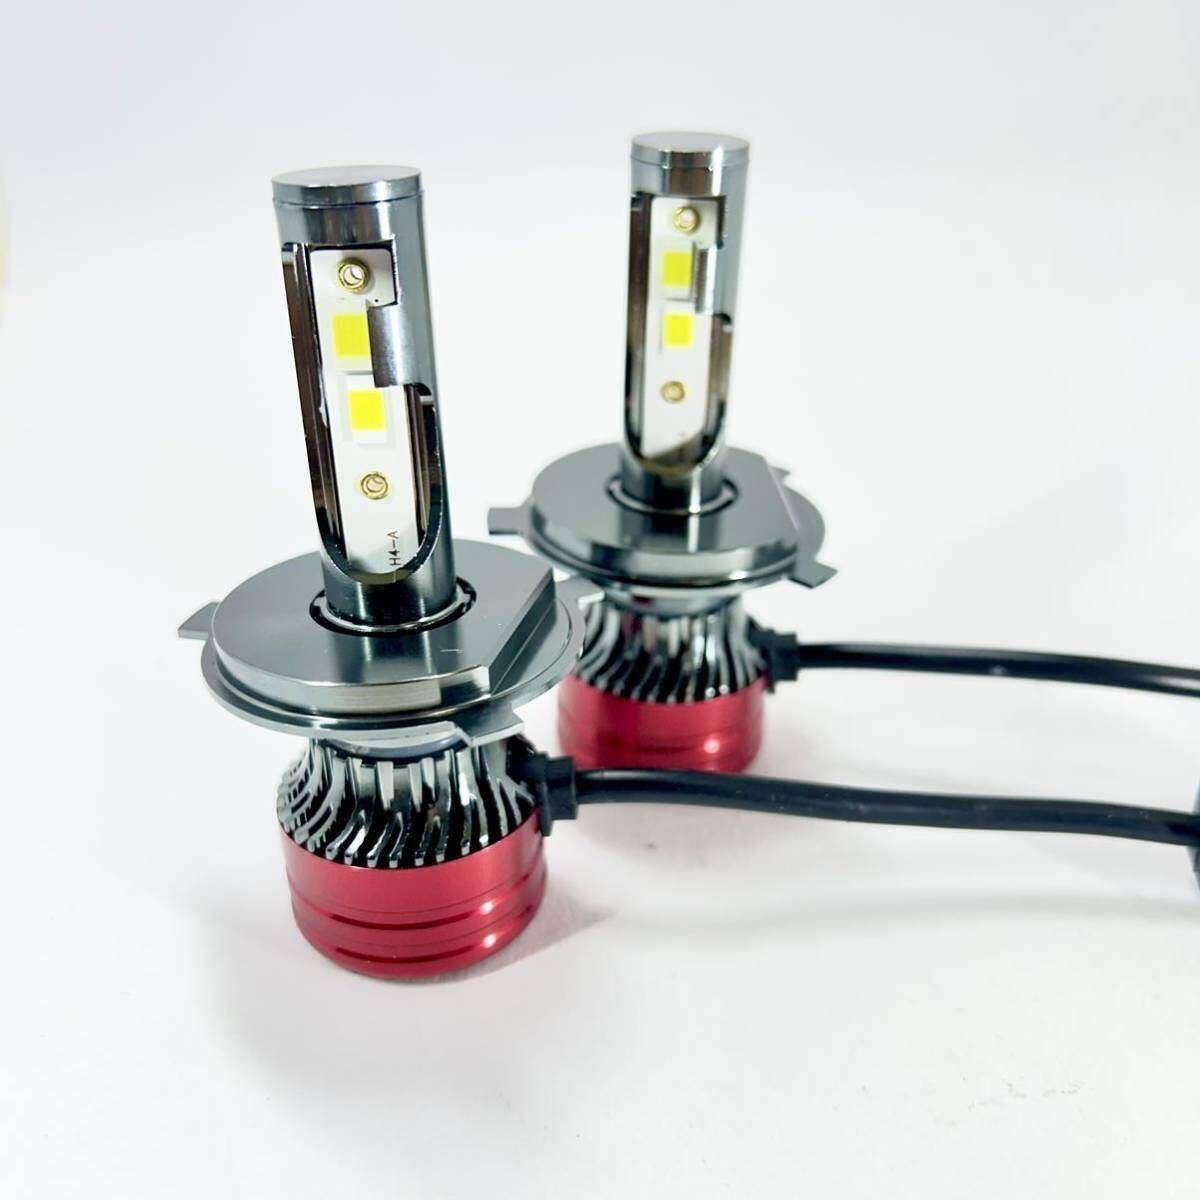  новый продукт самый дешевый H4 LED 60W 20000 люмен передняя фара клапан(лампа) соответствующий требованиям техосмотра переключатель Hi/Lo s